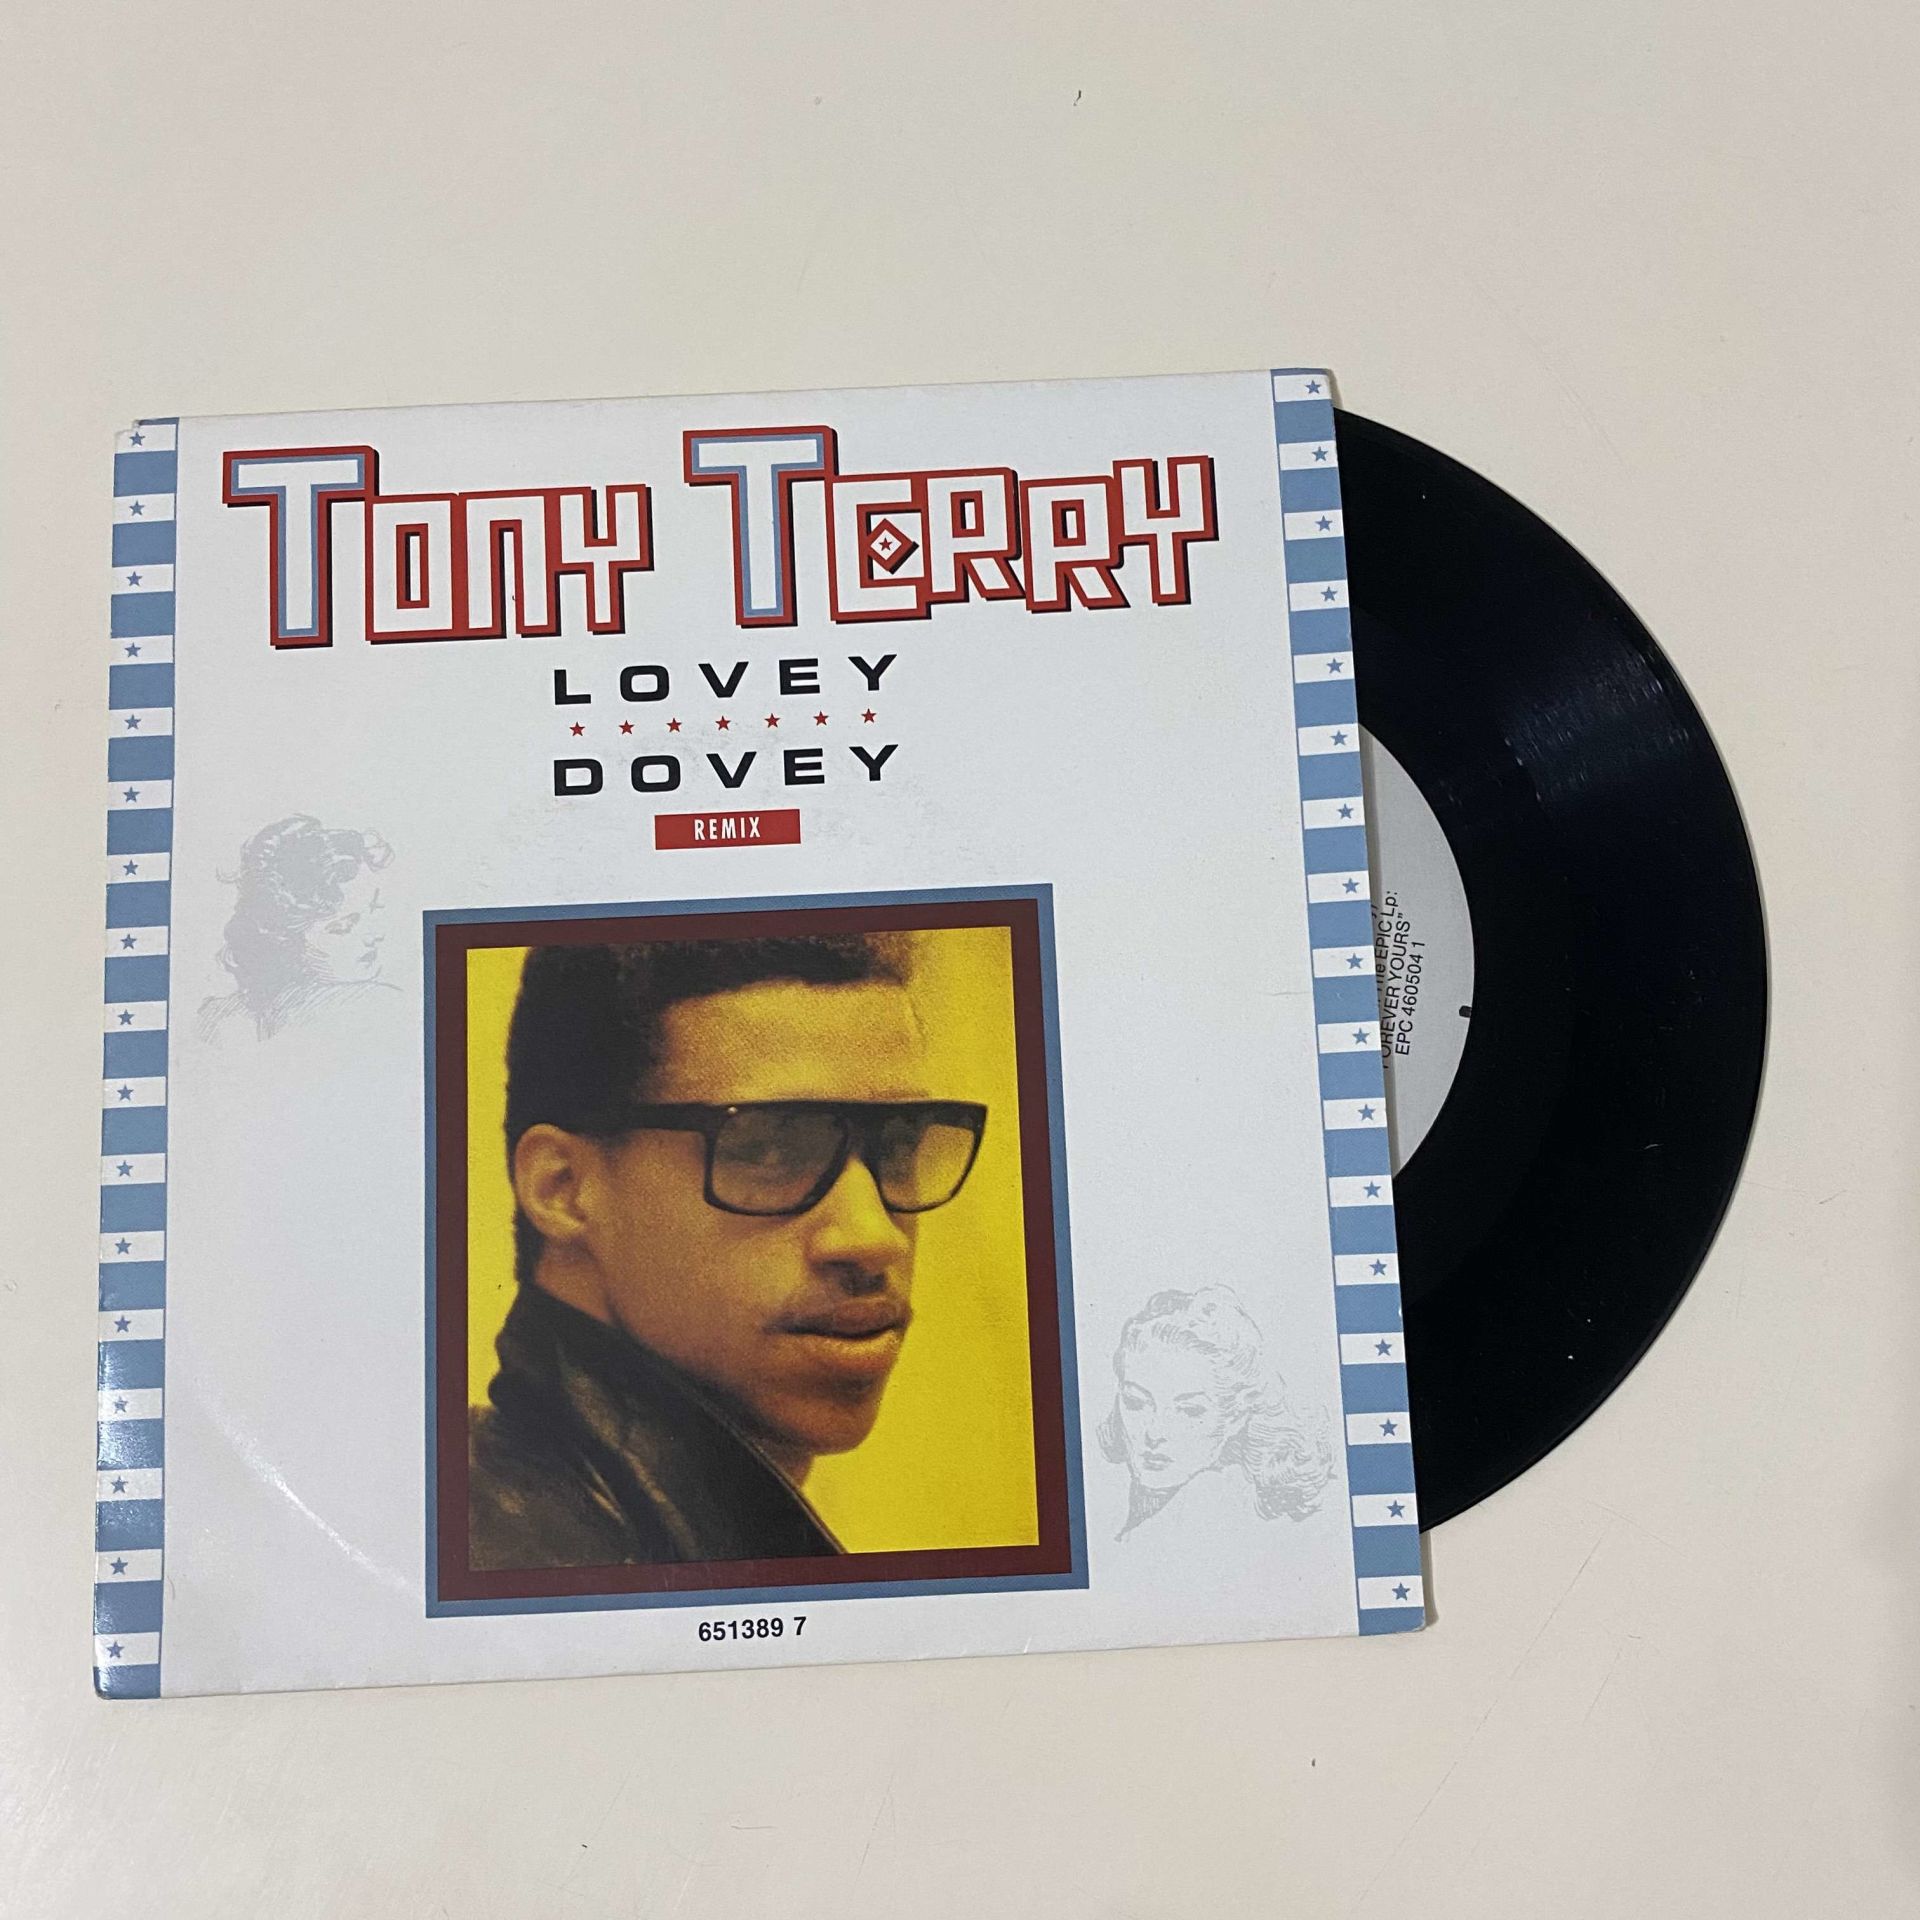 Tony Terry – Lovey Dovey